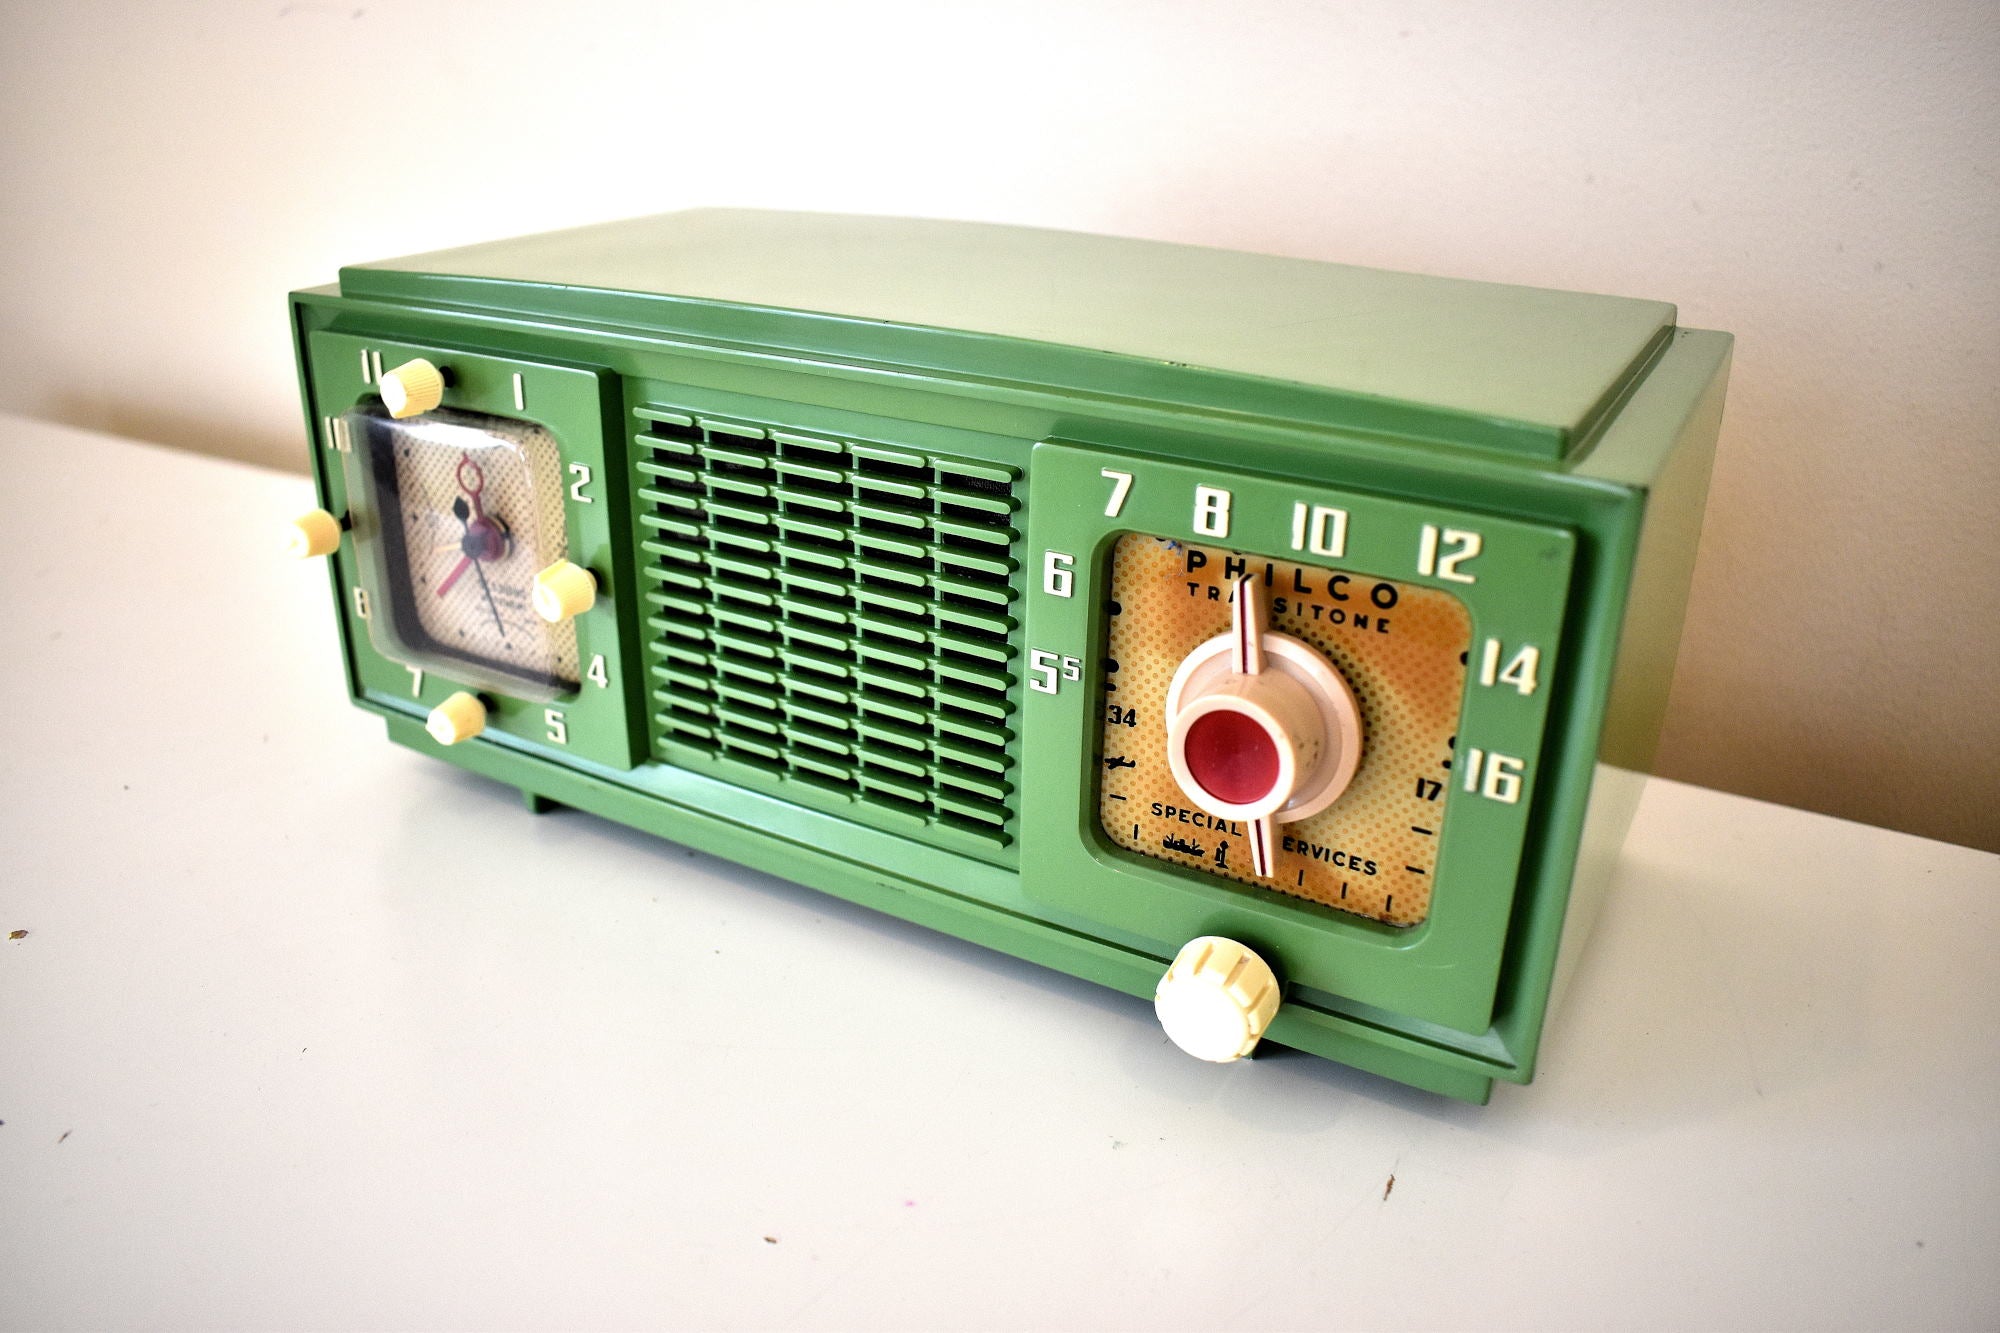 スプリンググリーン 1953 Philco Transitone Model 53-701X AM 真空管ラジオ レアなプリティカラーコンボサウンドが素晴らしい!